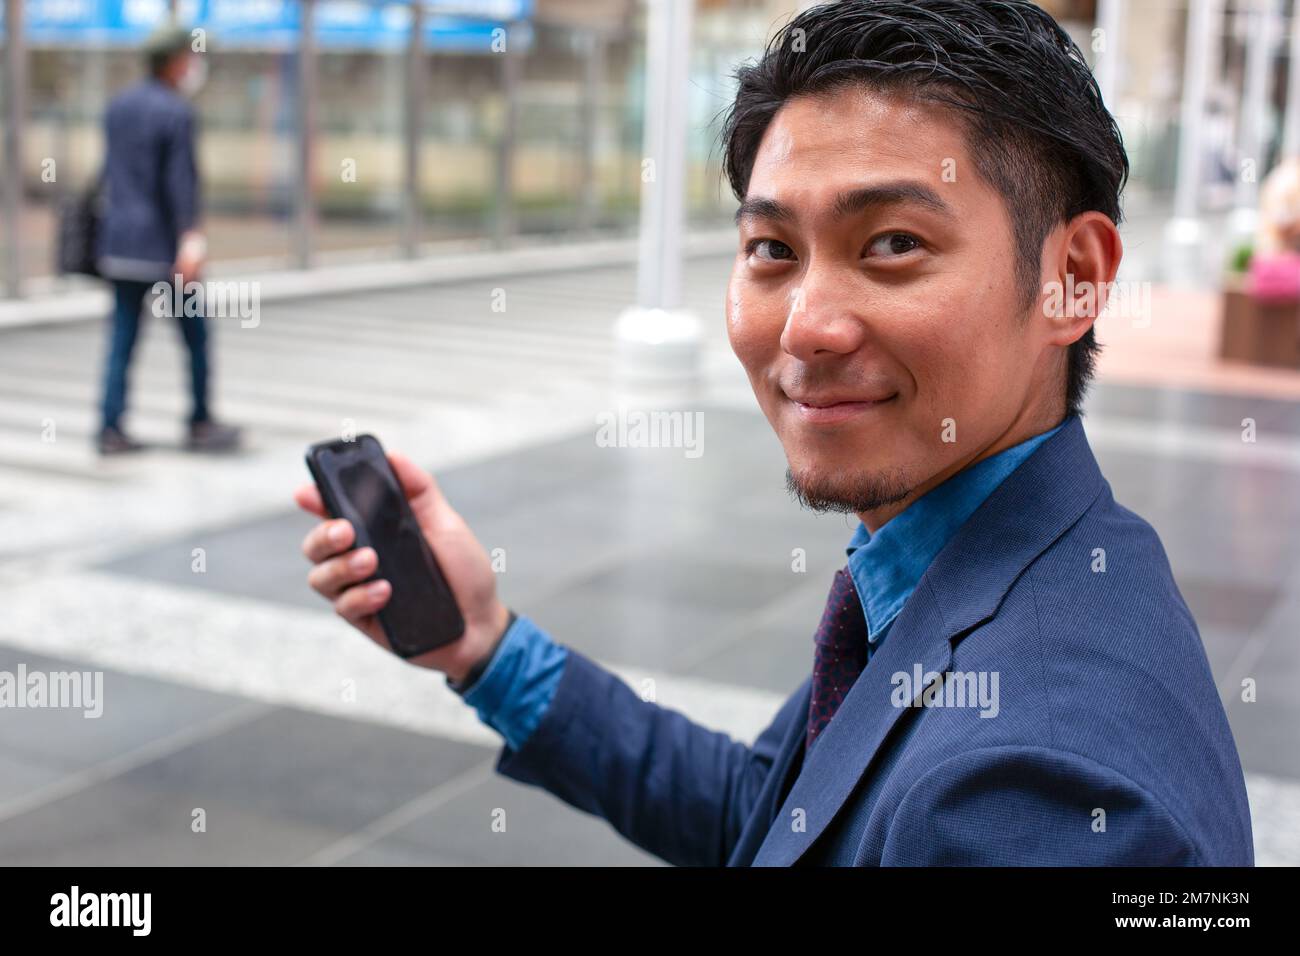 Un joven hombre de negocios con un traje azul en movimiento en un área del centro de la ciudad, sosteniendo su teléfono móvil. Foto de stock